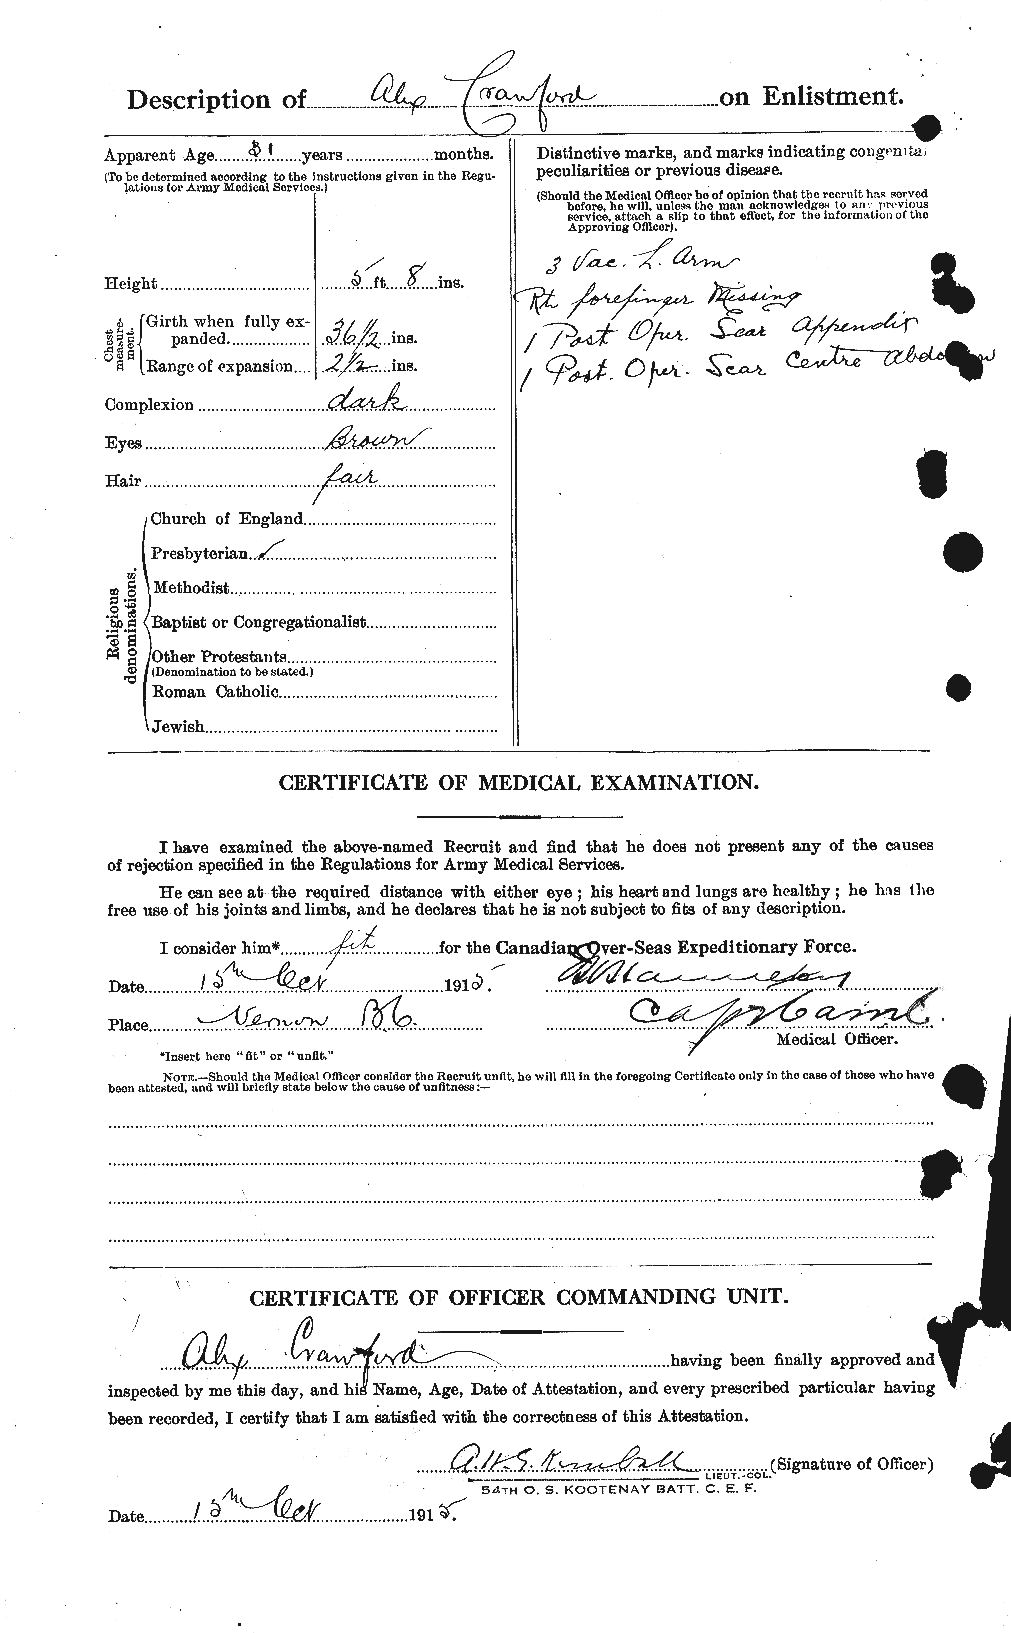 Dossiers du Personnel de la Première Guerre mondiale - CEC 060963b